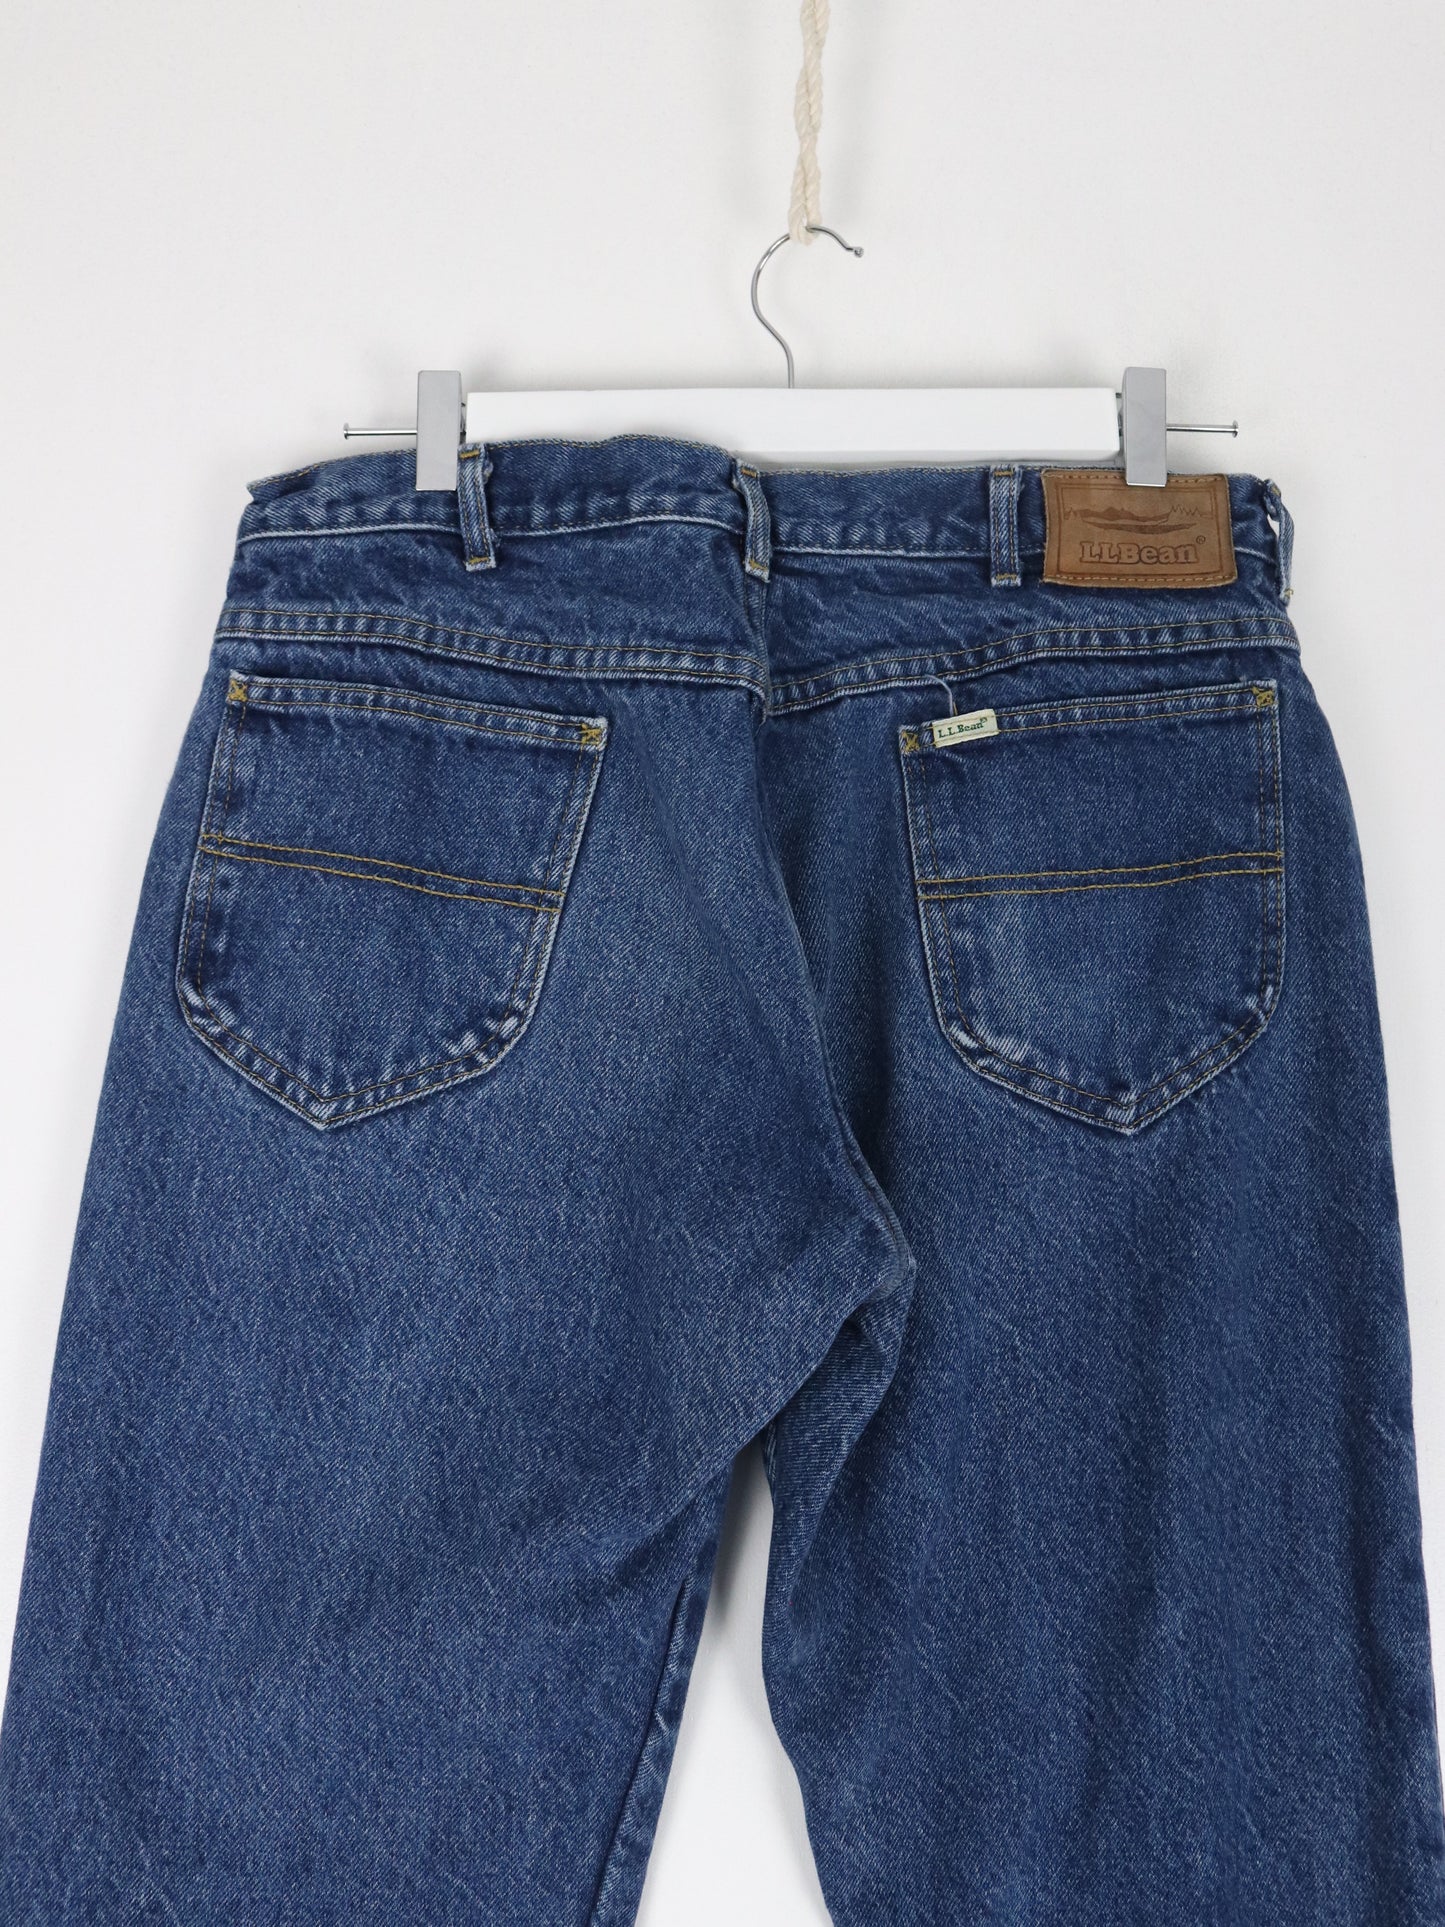 Vintage L.L. Bean Pants Fits Mens 34 x 29 Blue Denim Jeans Flannel Lined